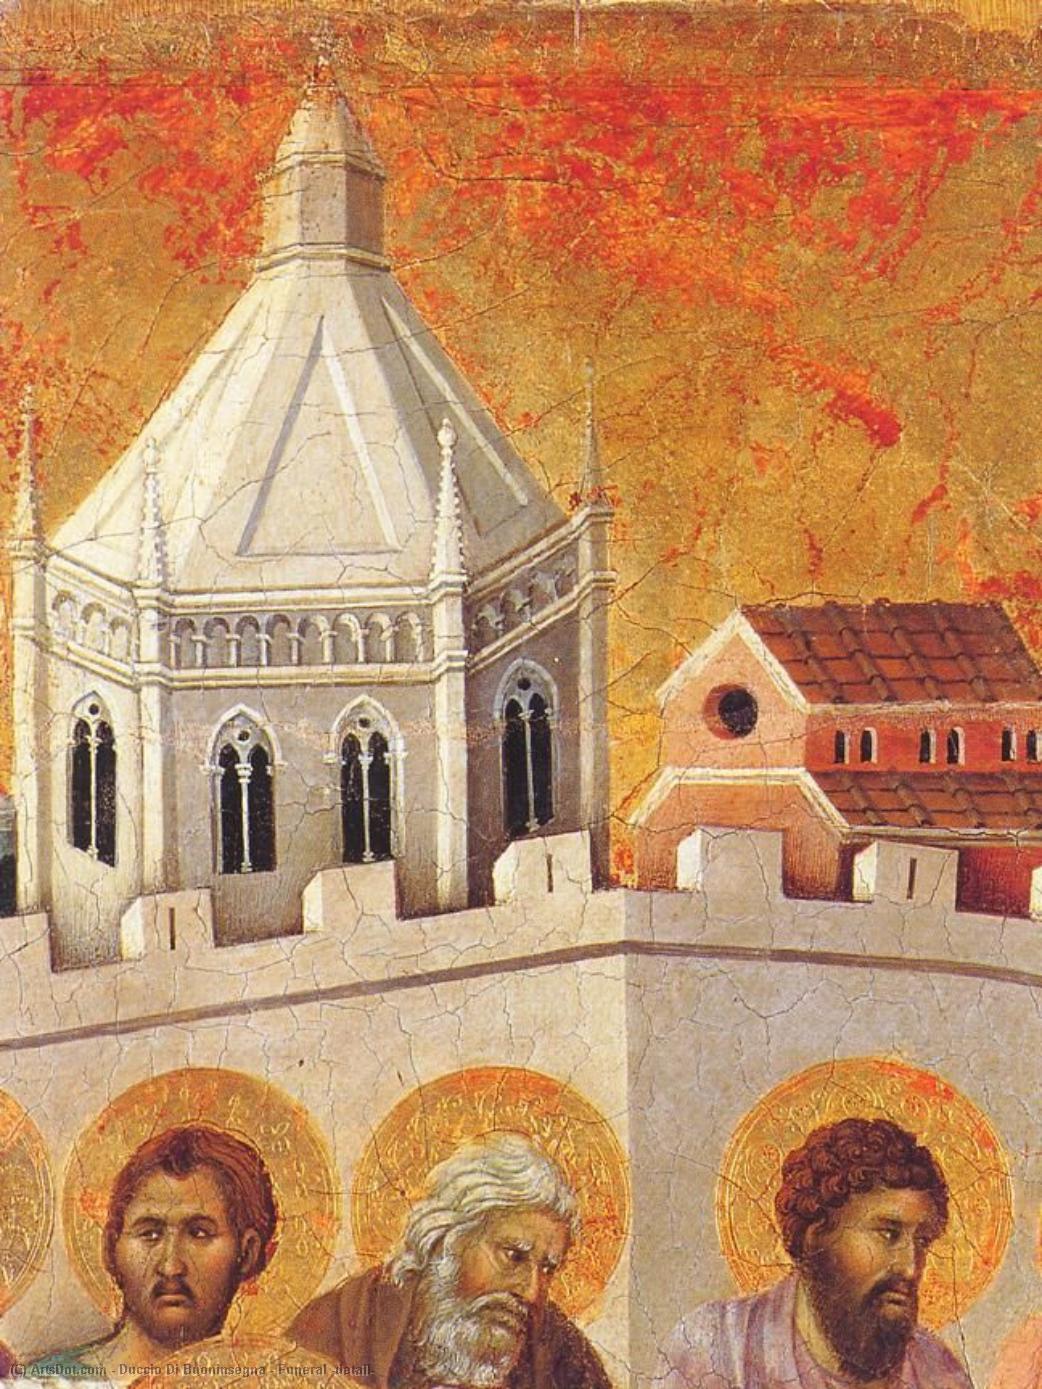 WikiOO.org - Encyclopedia of Fine Arts - Maleri, Artwork Duccio Di Buoninsegna - Funeral (detail)